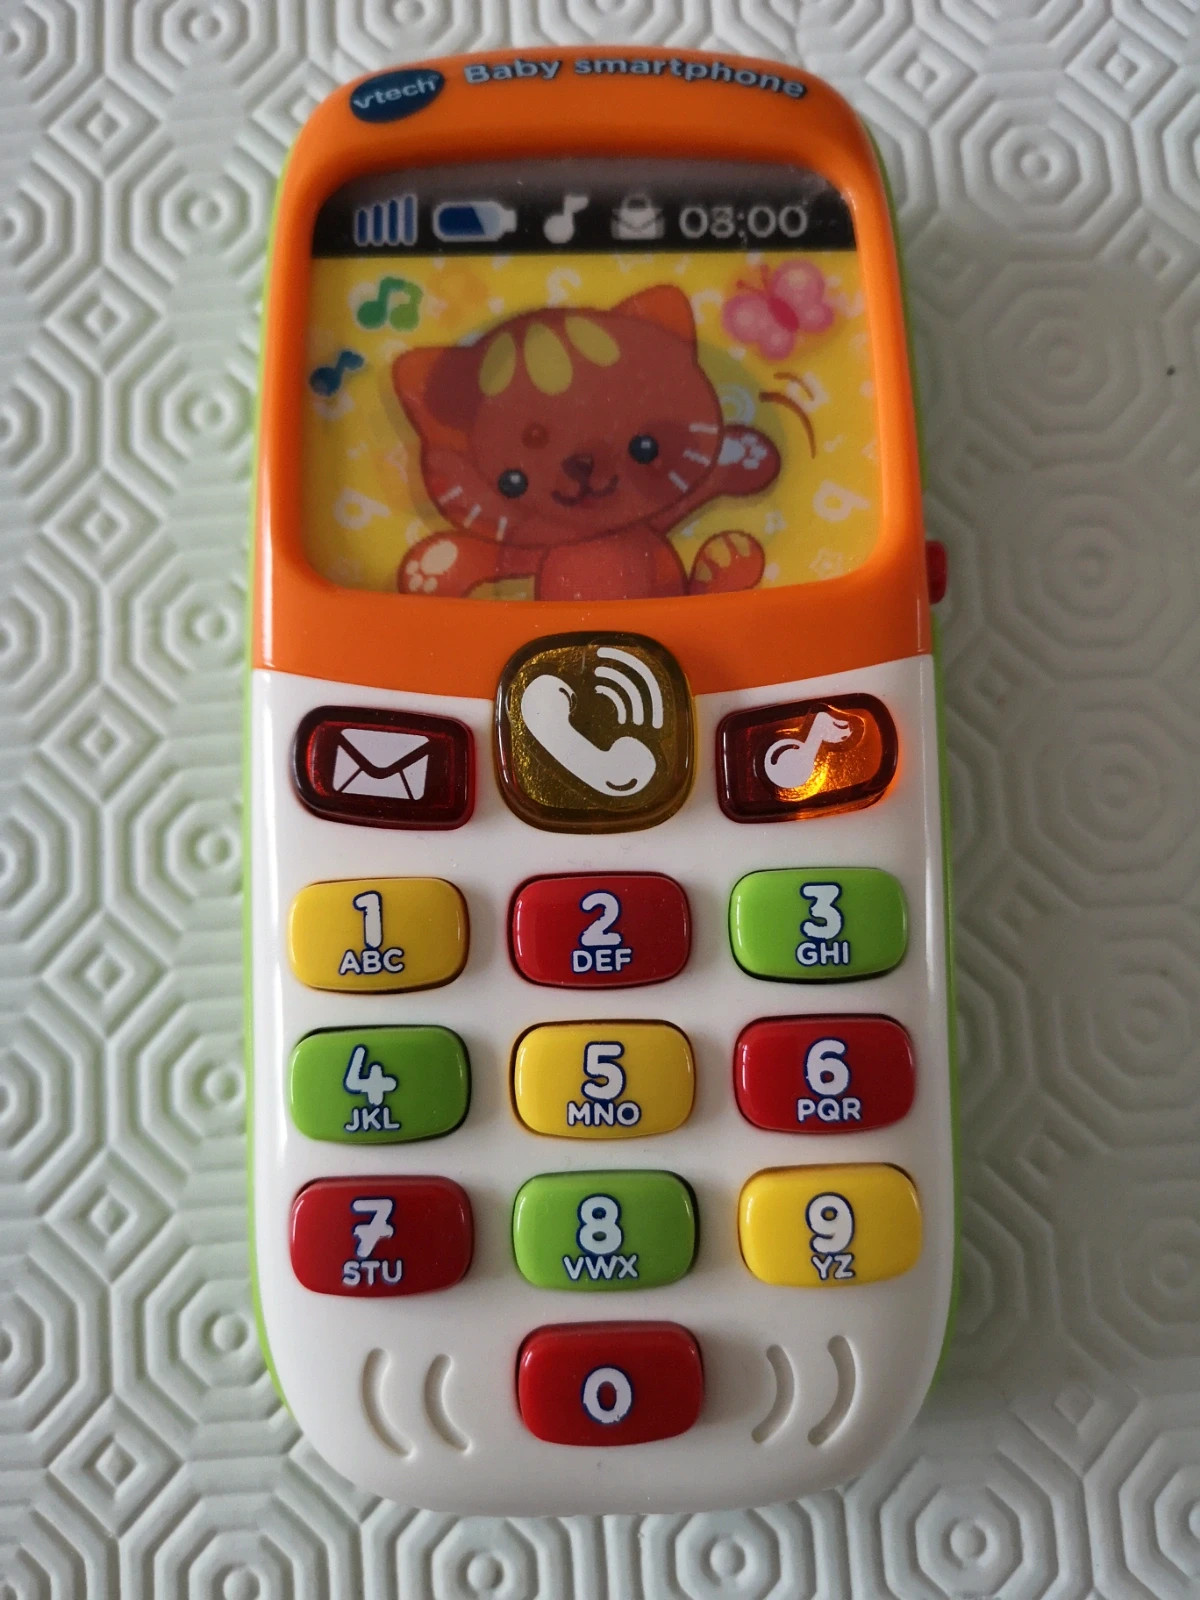 Vtech - Jouet électronique - Baby smartphone bilingue